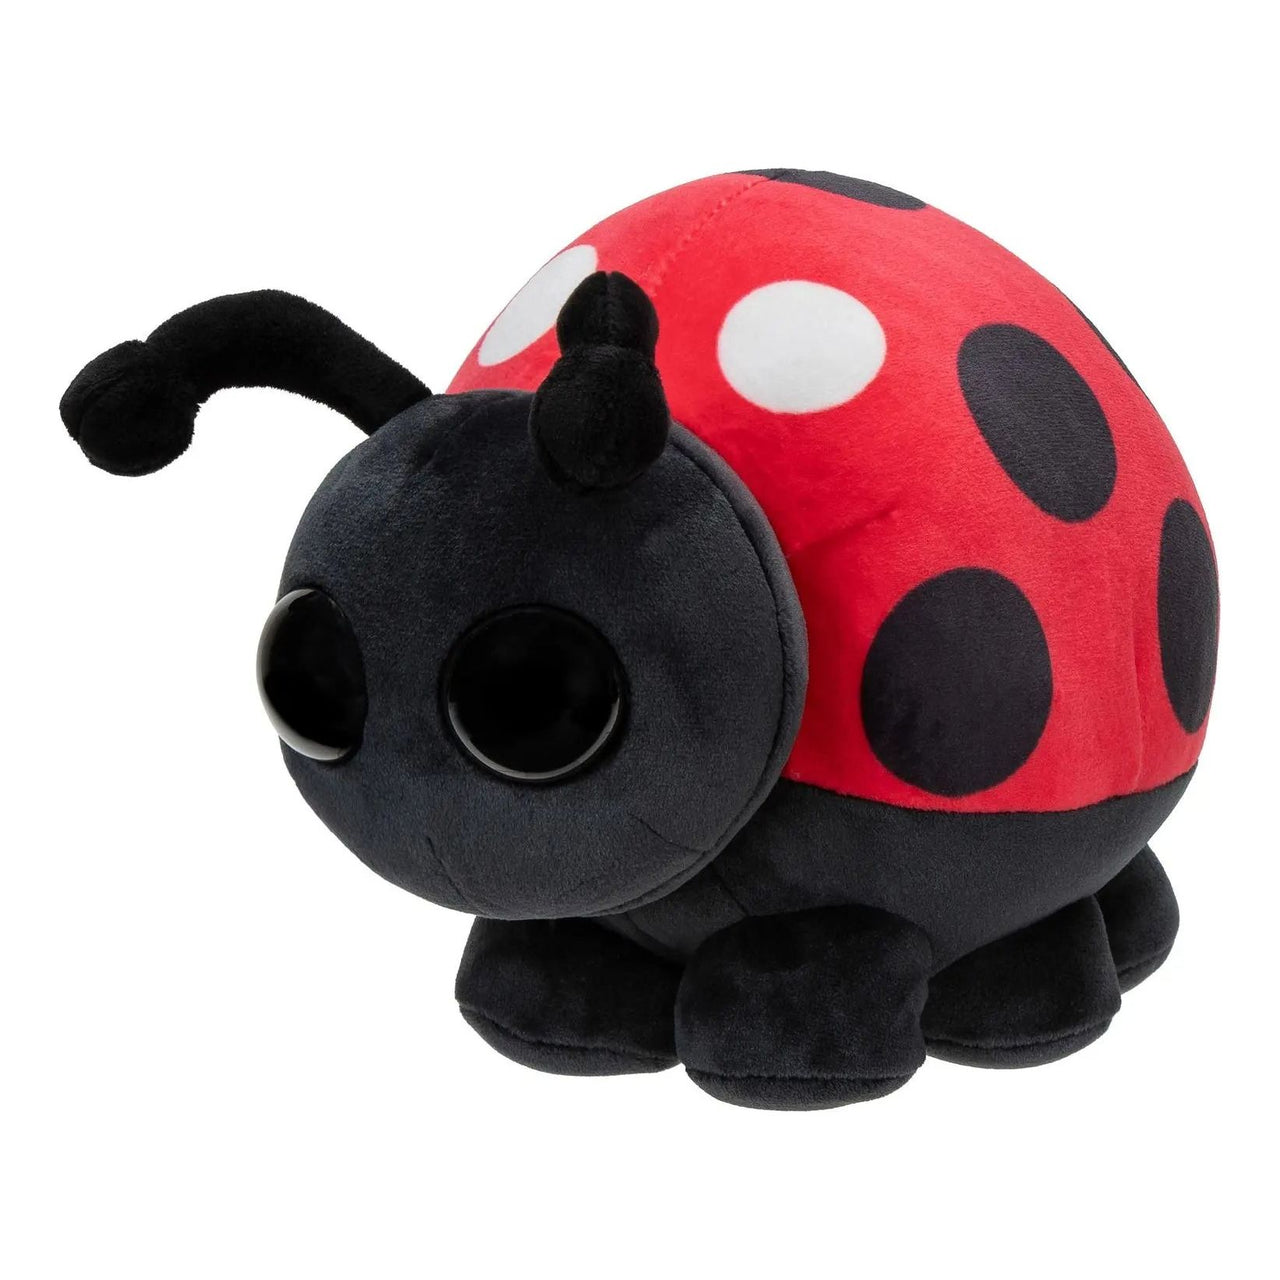 Adopt Me Collector Plush Ladybug Adopt Me